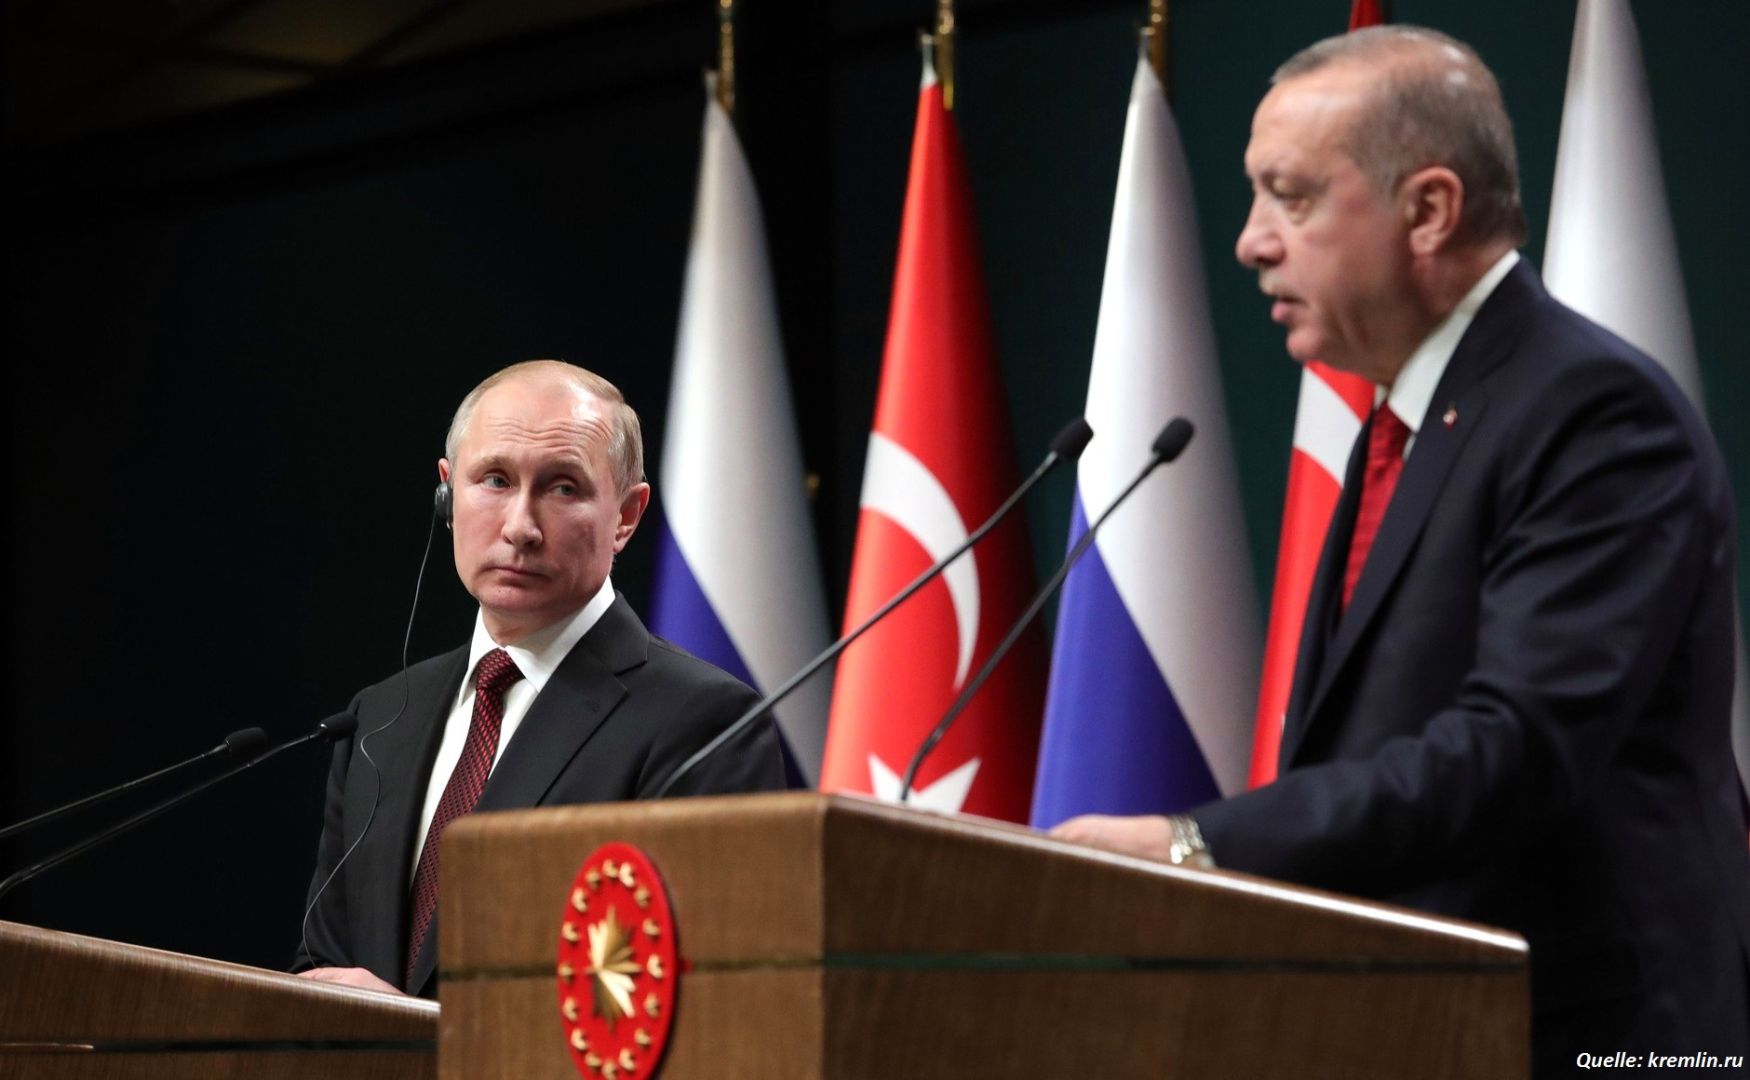 Putin und Erdogan diskutierten über die russisch-türkischen Beziehungen